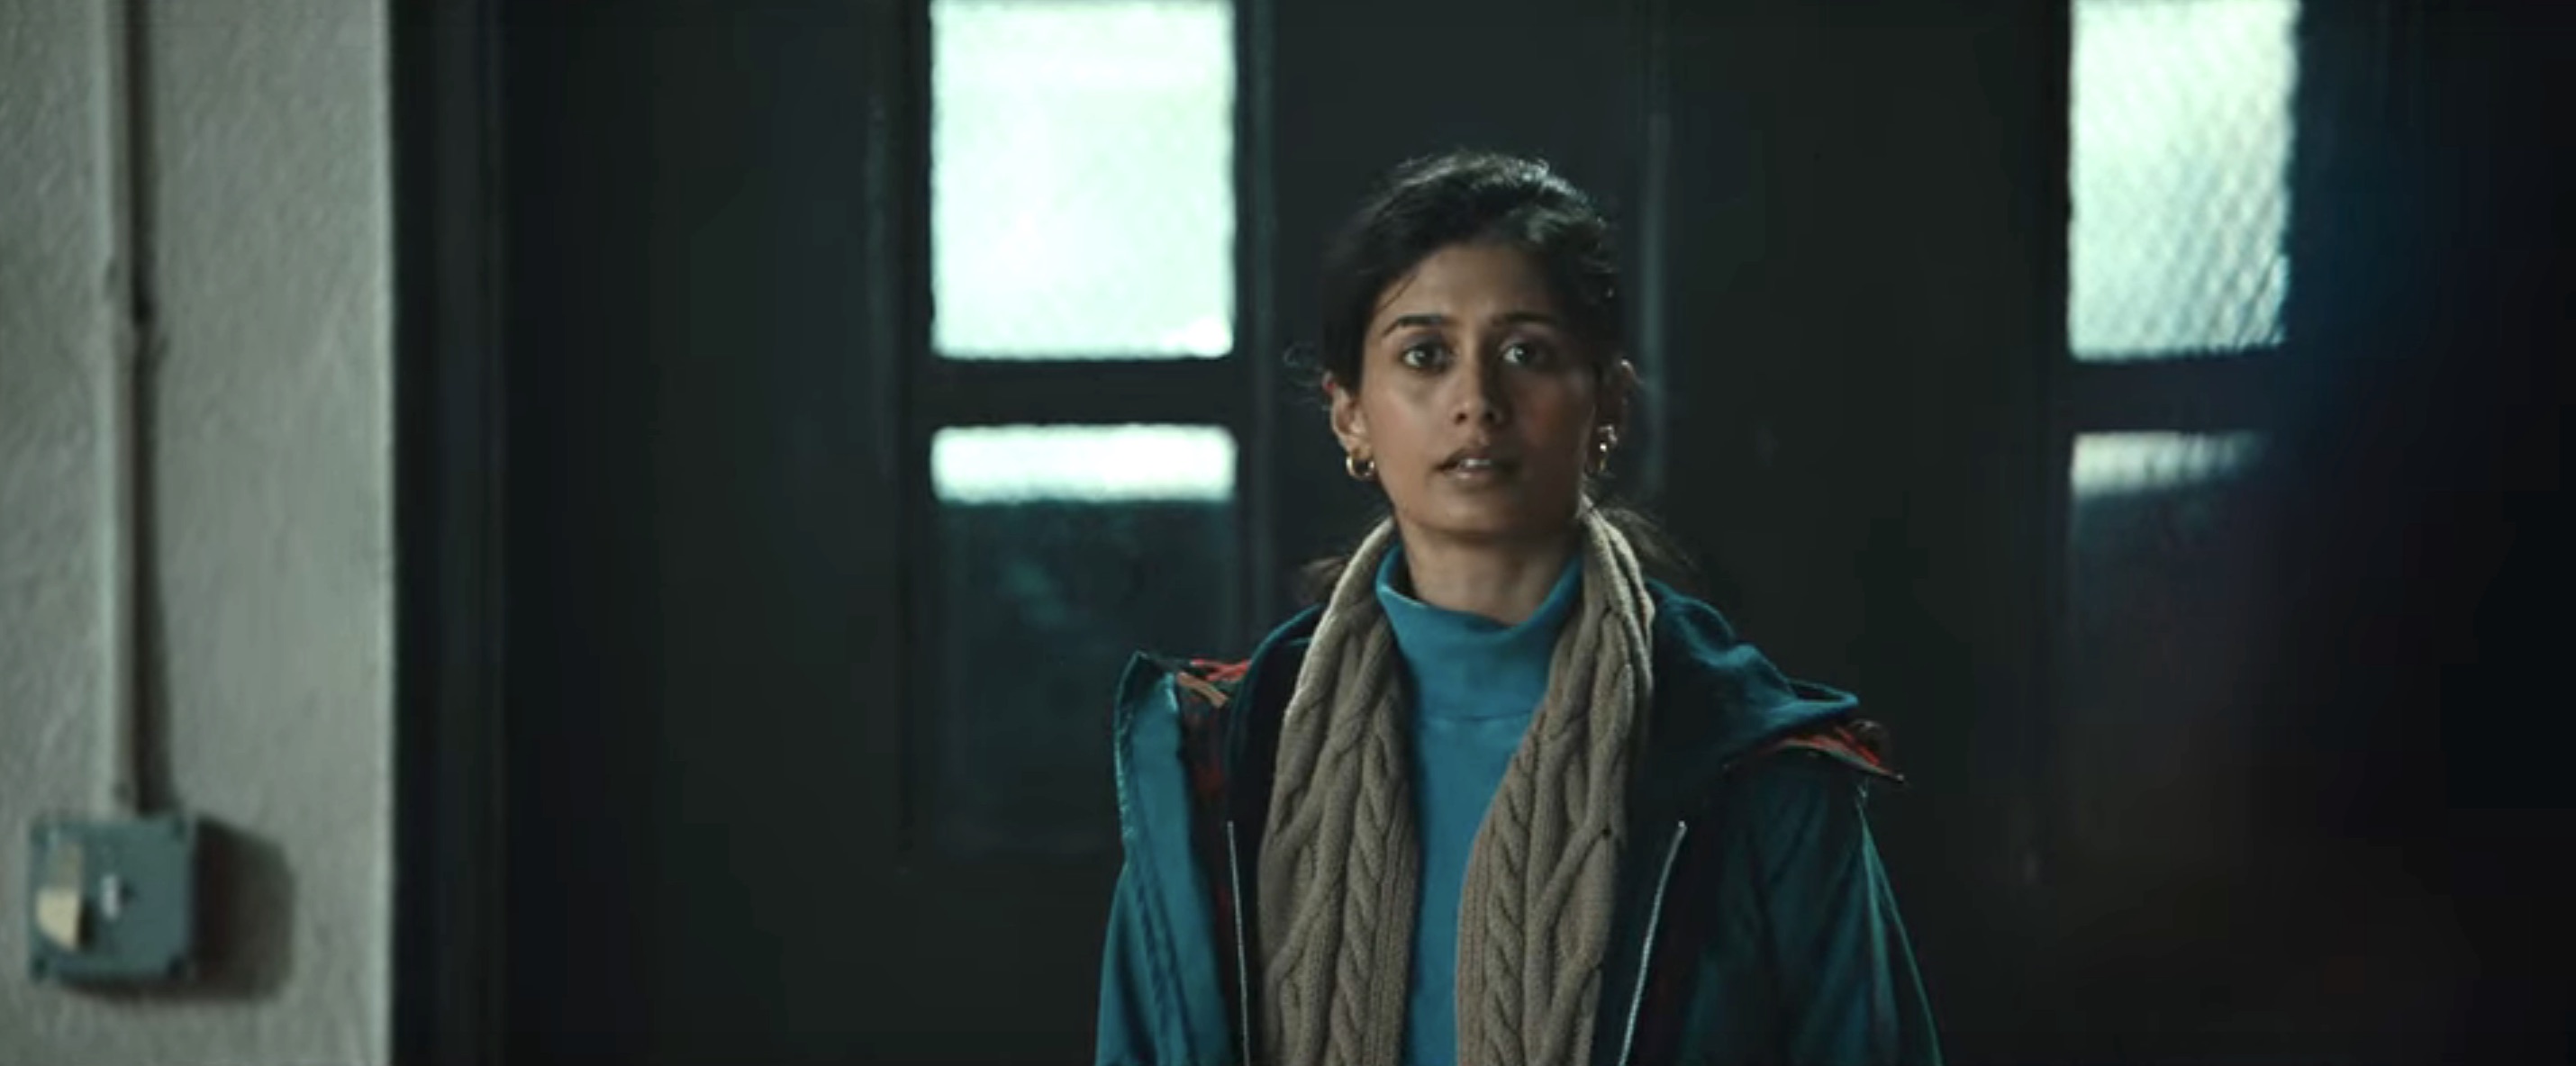 Worth Cast on Netflix - Shunori Ramanthan as Priya Khundi